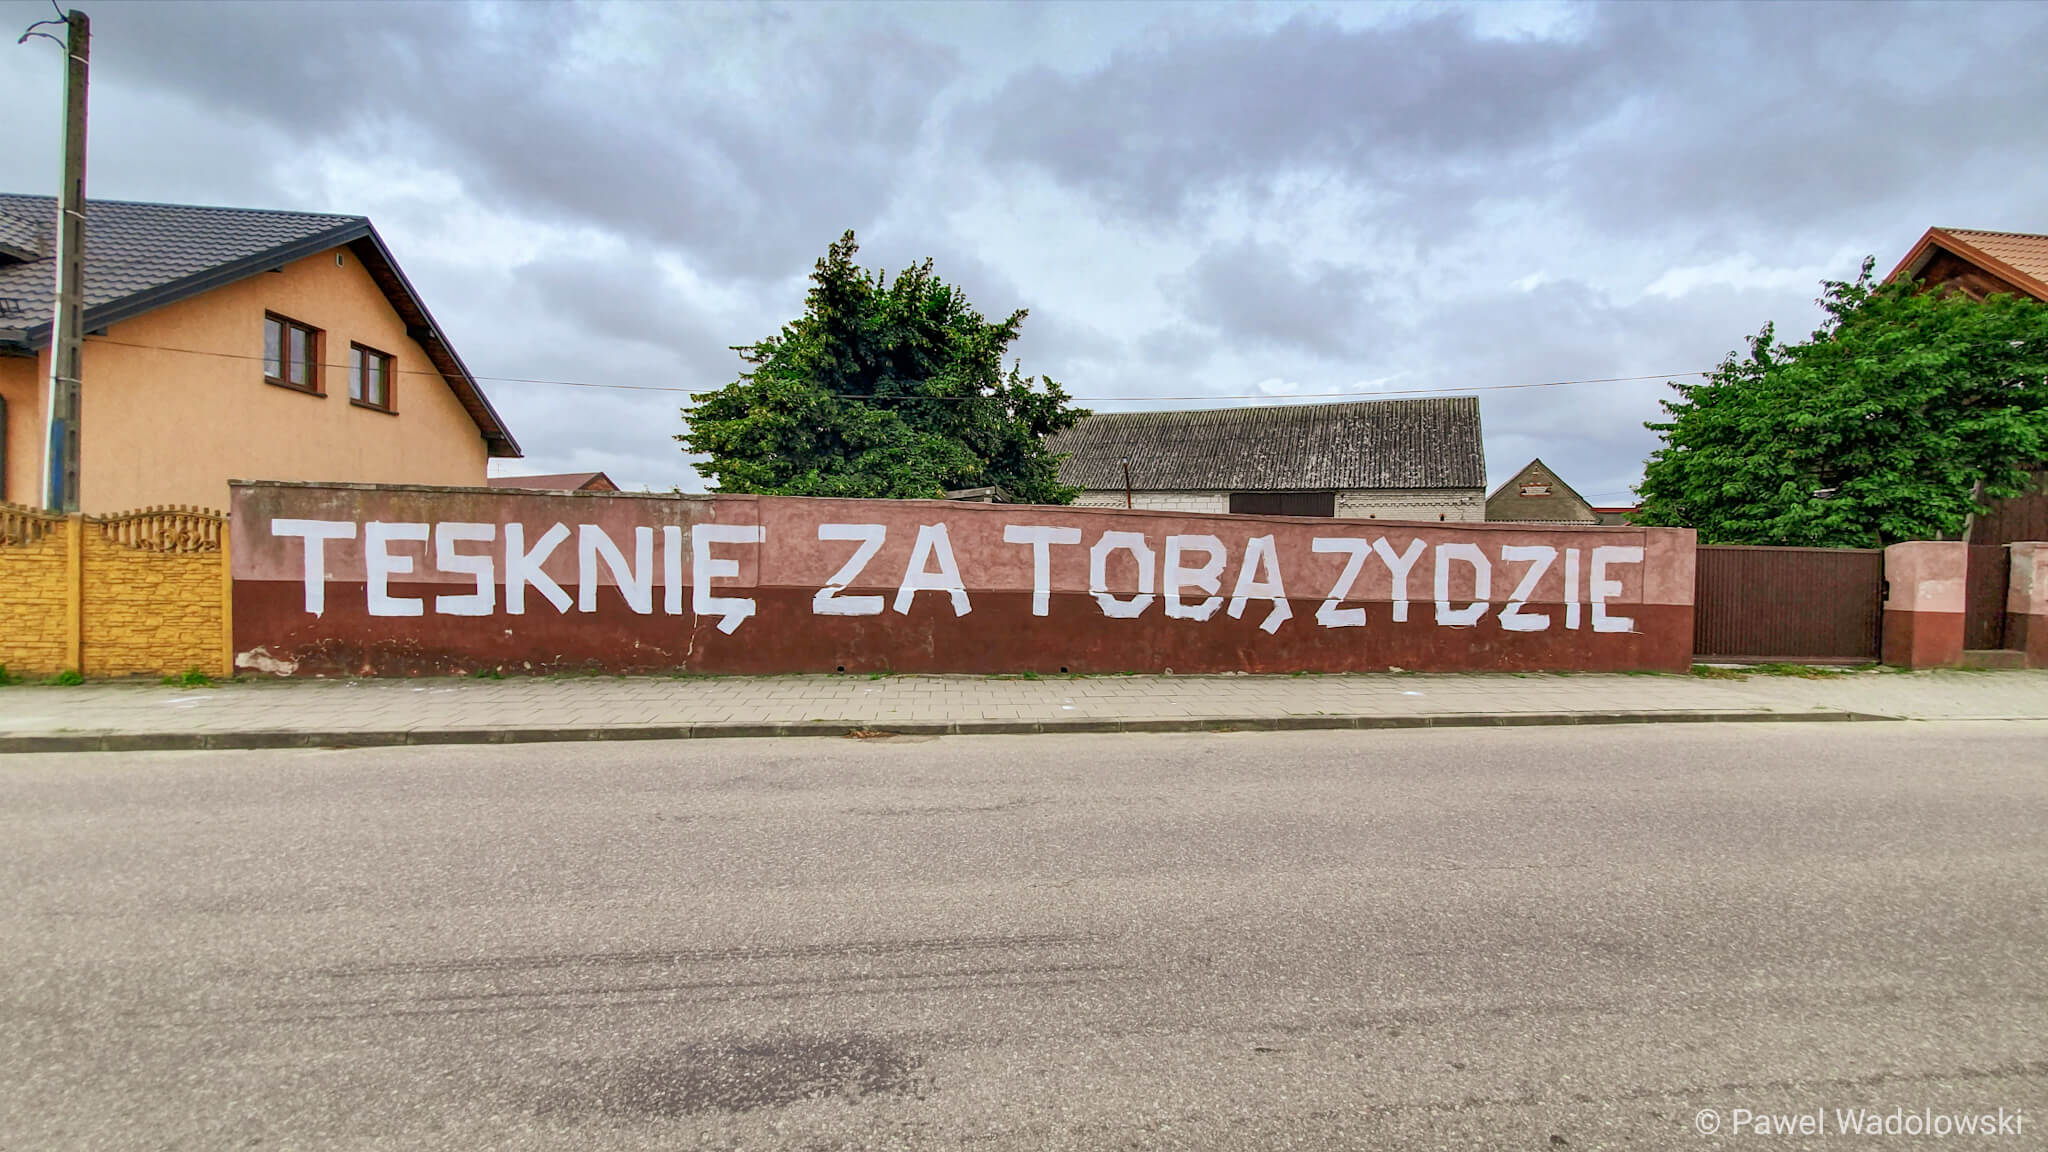 Napis "Tęsknie za tobą Żydzie" w Jedwabnem, fot. Paweł Wądołowski